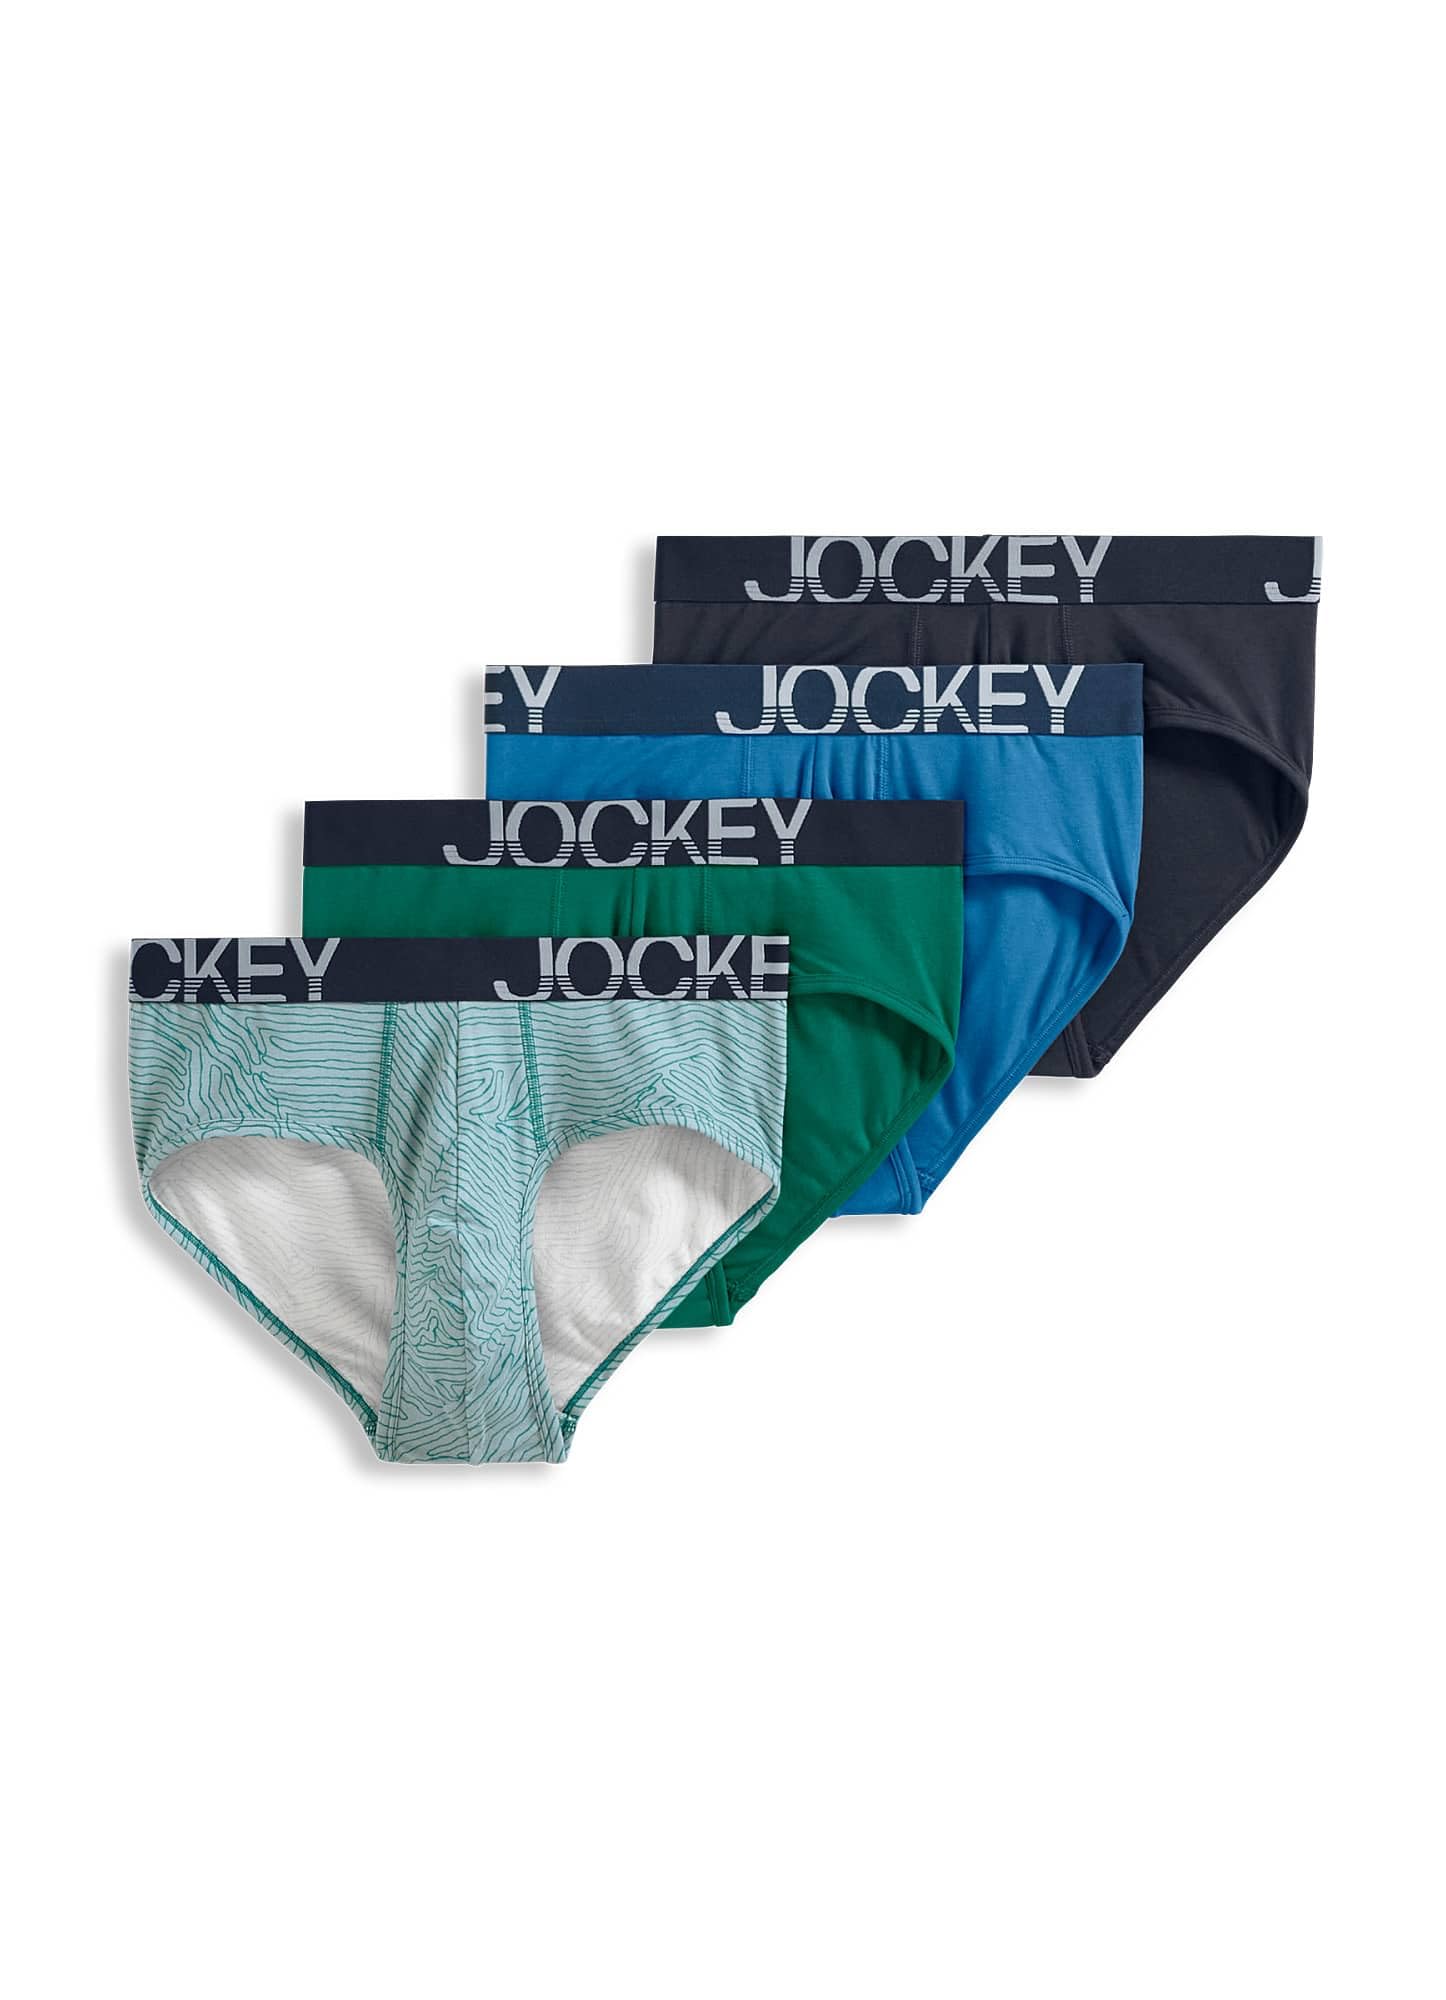 4-Pack Jockey Men's Underwear ActiveStretch Brief (Aged Indigo/True  Navy/Wanderlust Lines/Rainforest Green) $13.99 + Free Shipping